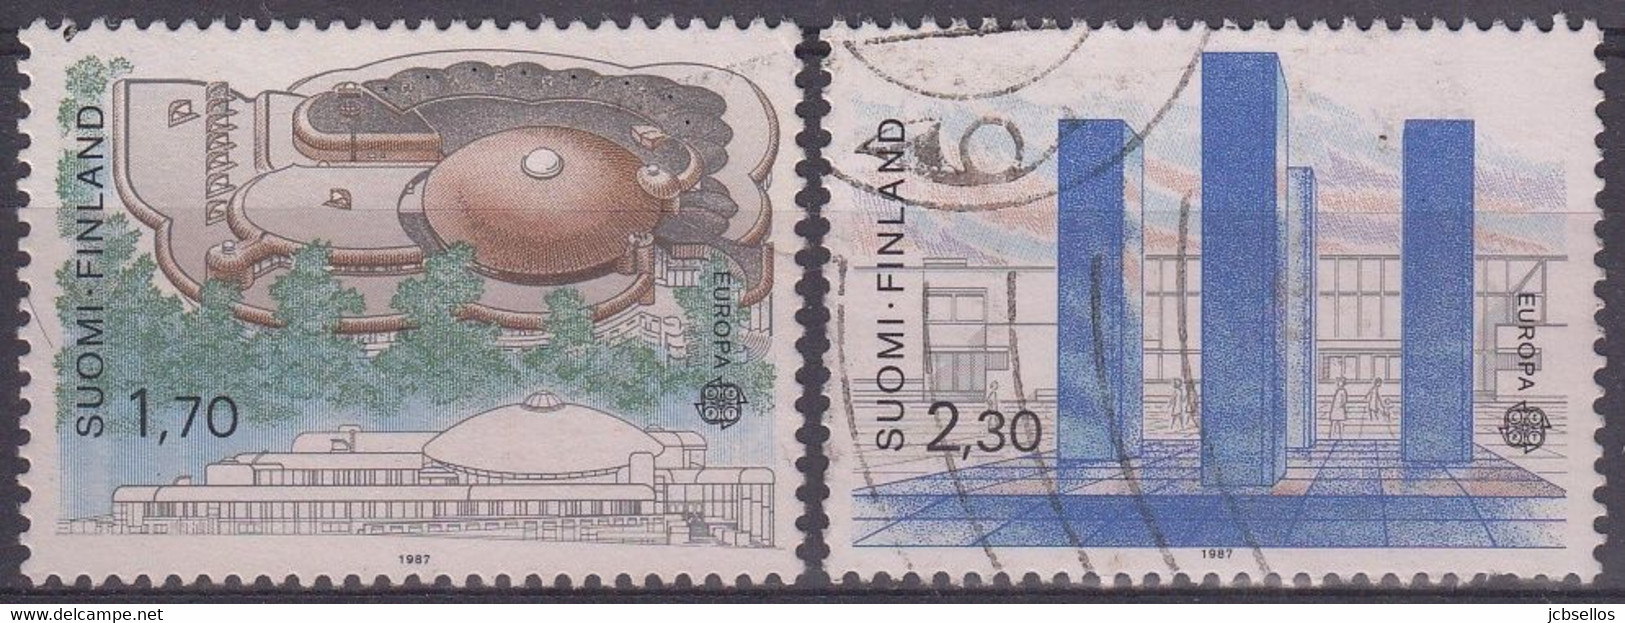 FINLANDIA 1987 Nº 985/986 USADO - Usados